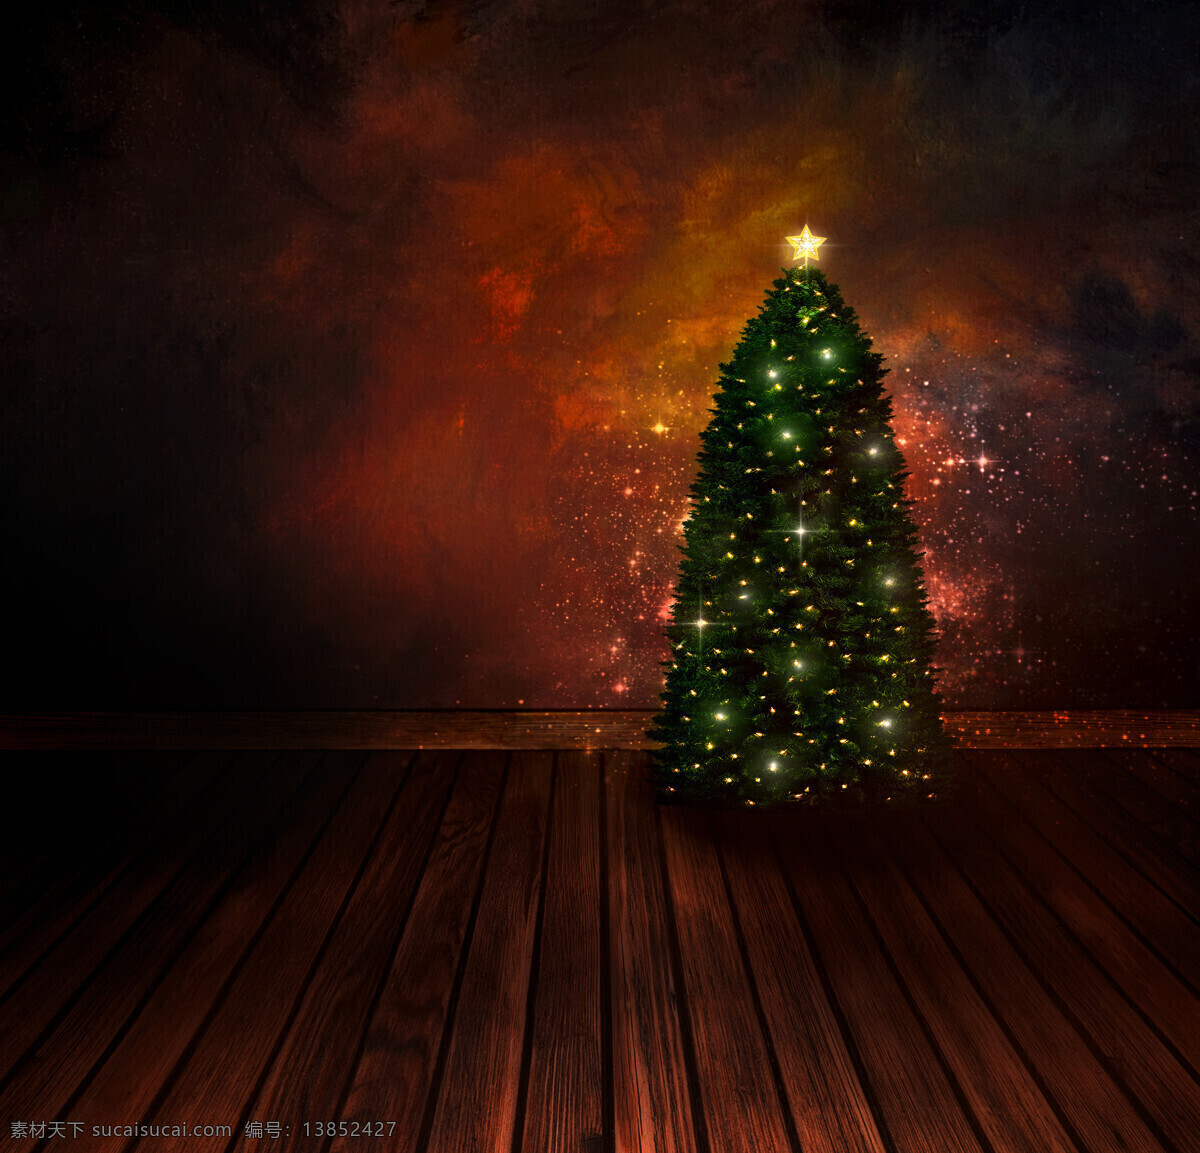 圣诞树 木板 背景 木板背景 圣诞节背景 新年背景 底纹边框 底纹背景 节日庆典 生活百科